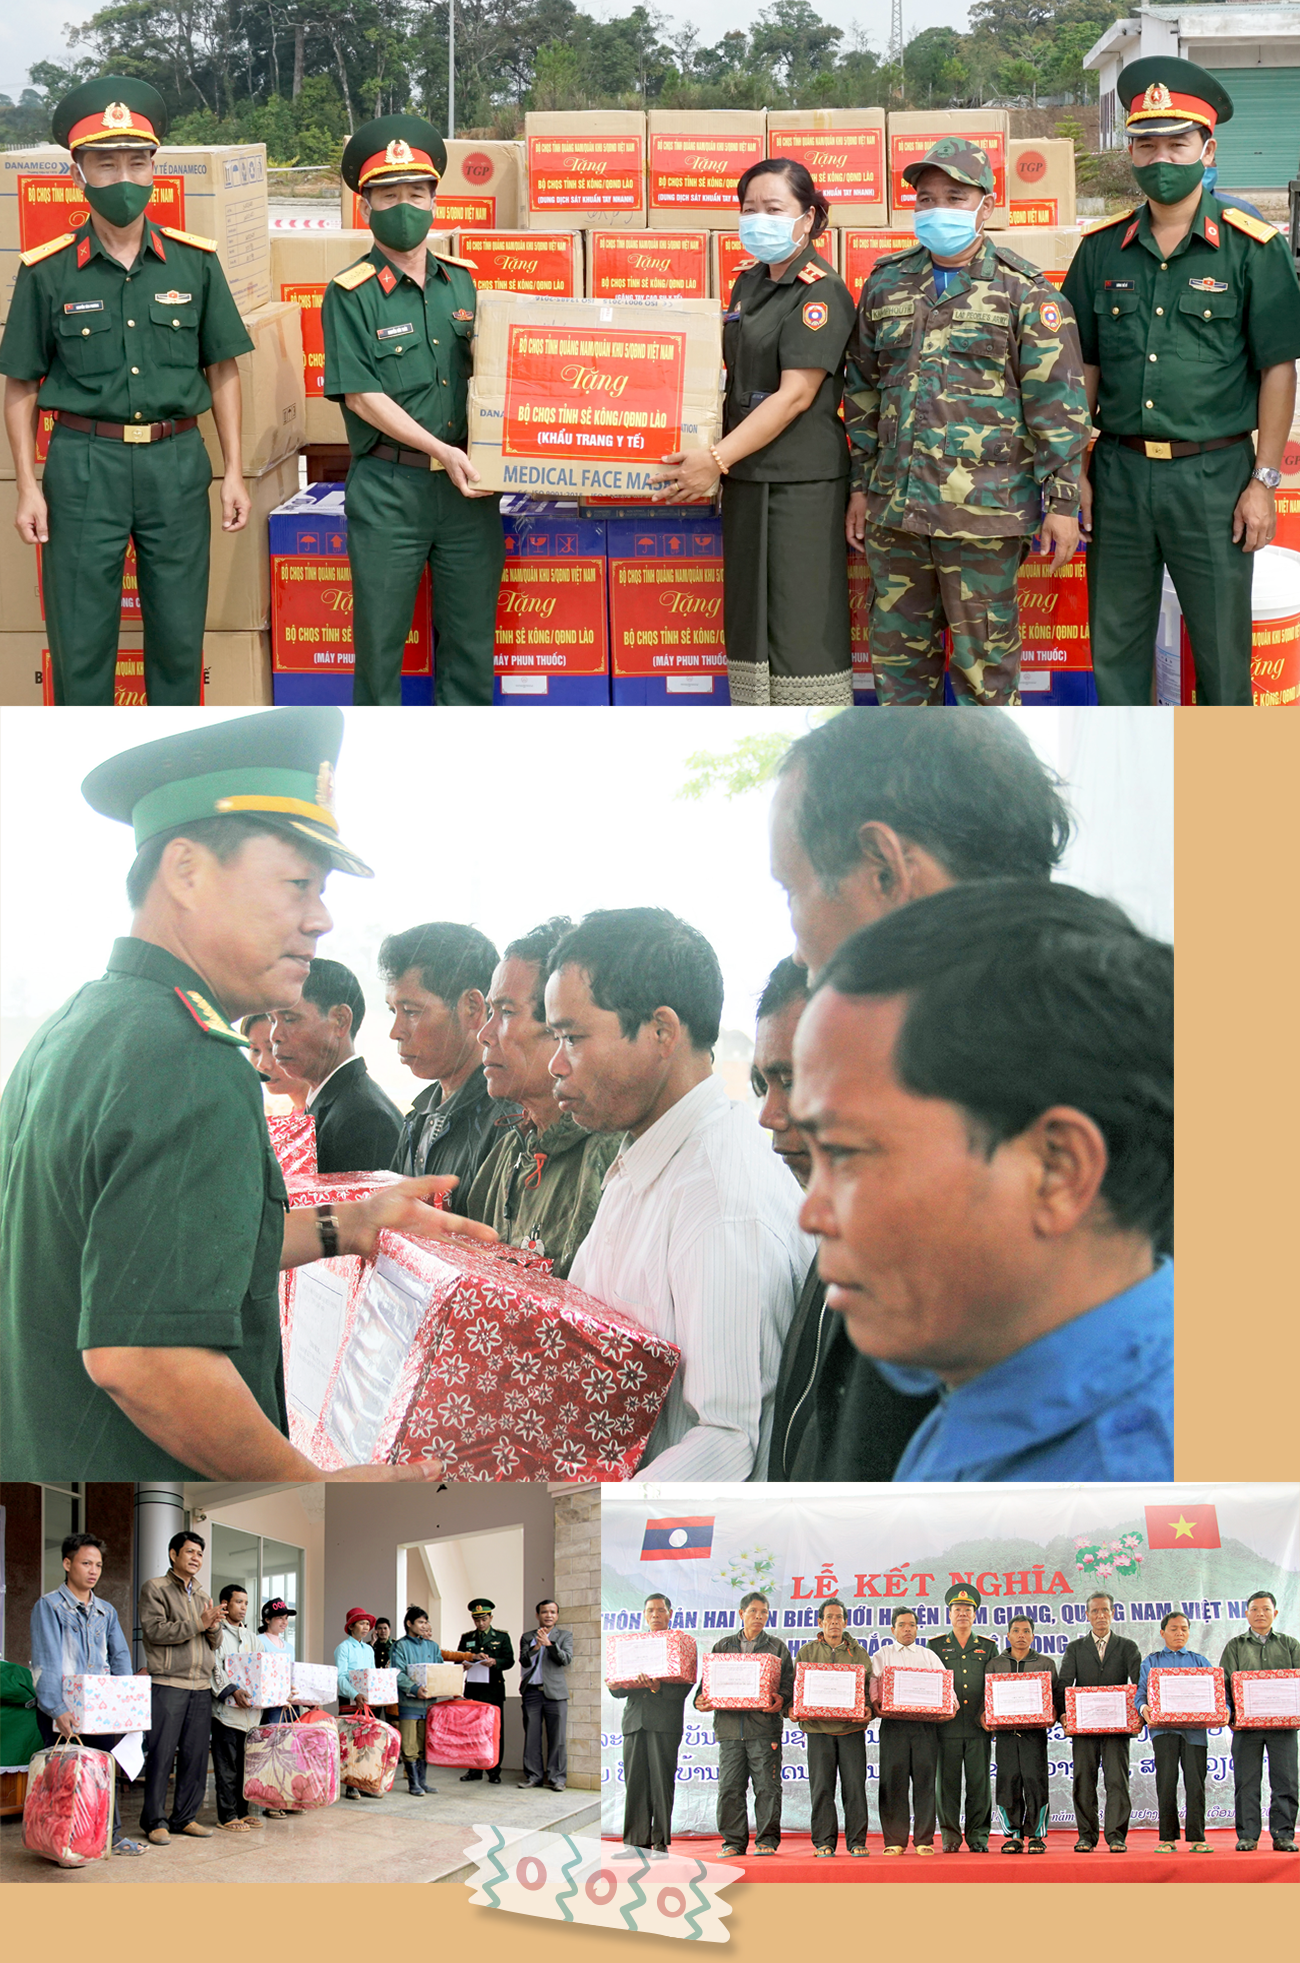 Lực lượng quân sự, biên phòng và các huyện miền núi Quảng Nam giáp biên giới Lào luôn tạo mọi điều kiện giúp đỡ chính quyền và người dân tại các cụm bản ổn định đời sống.